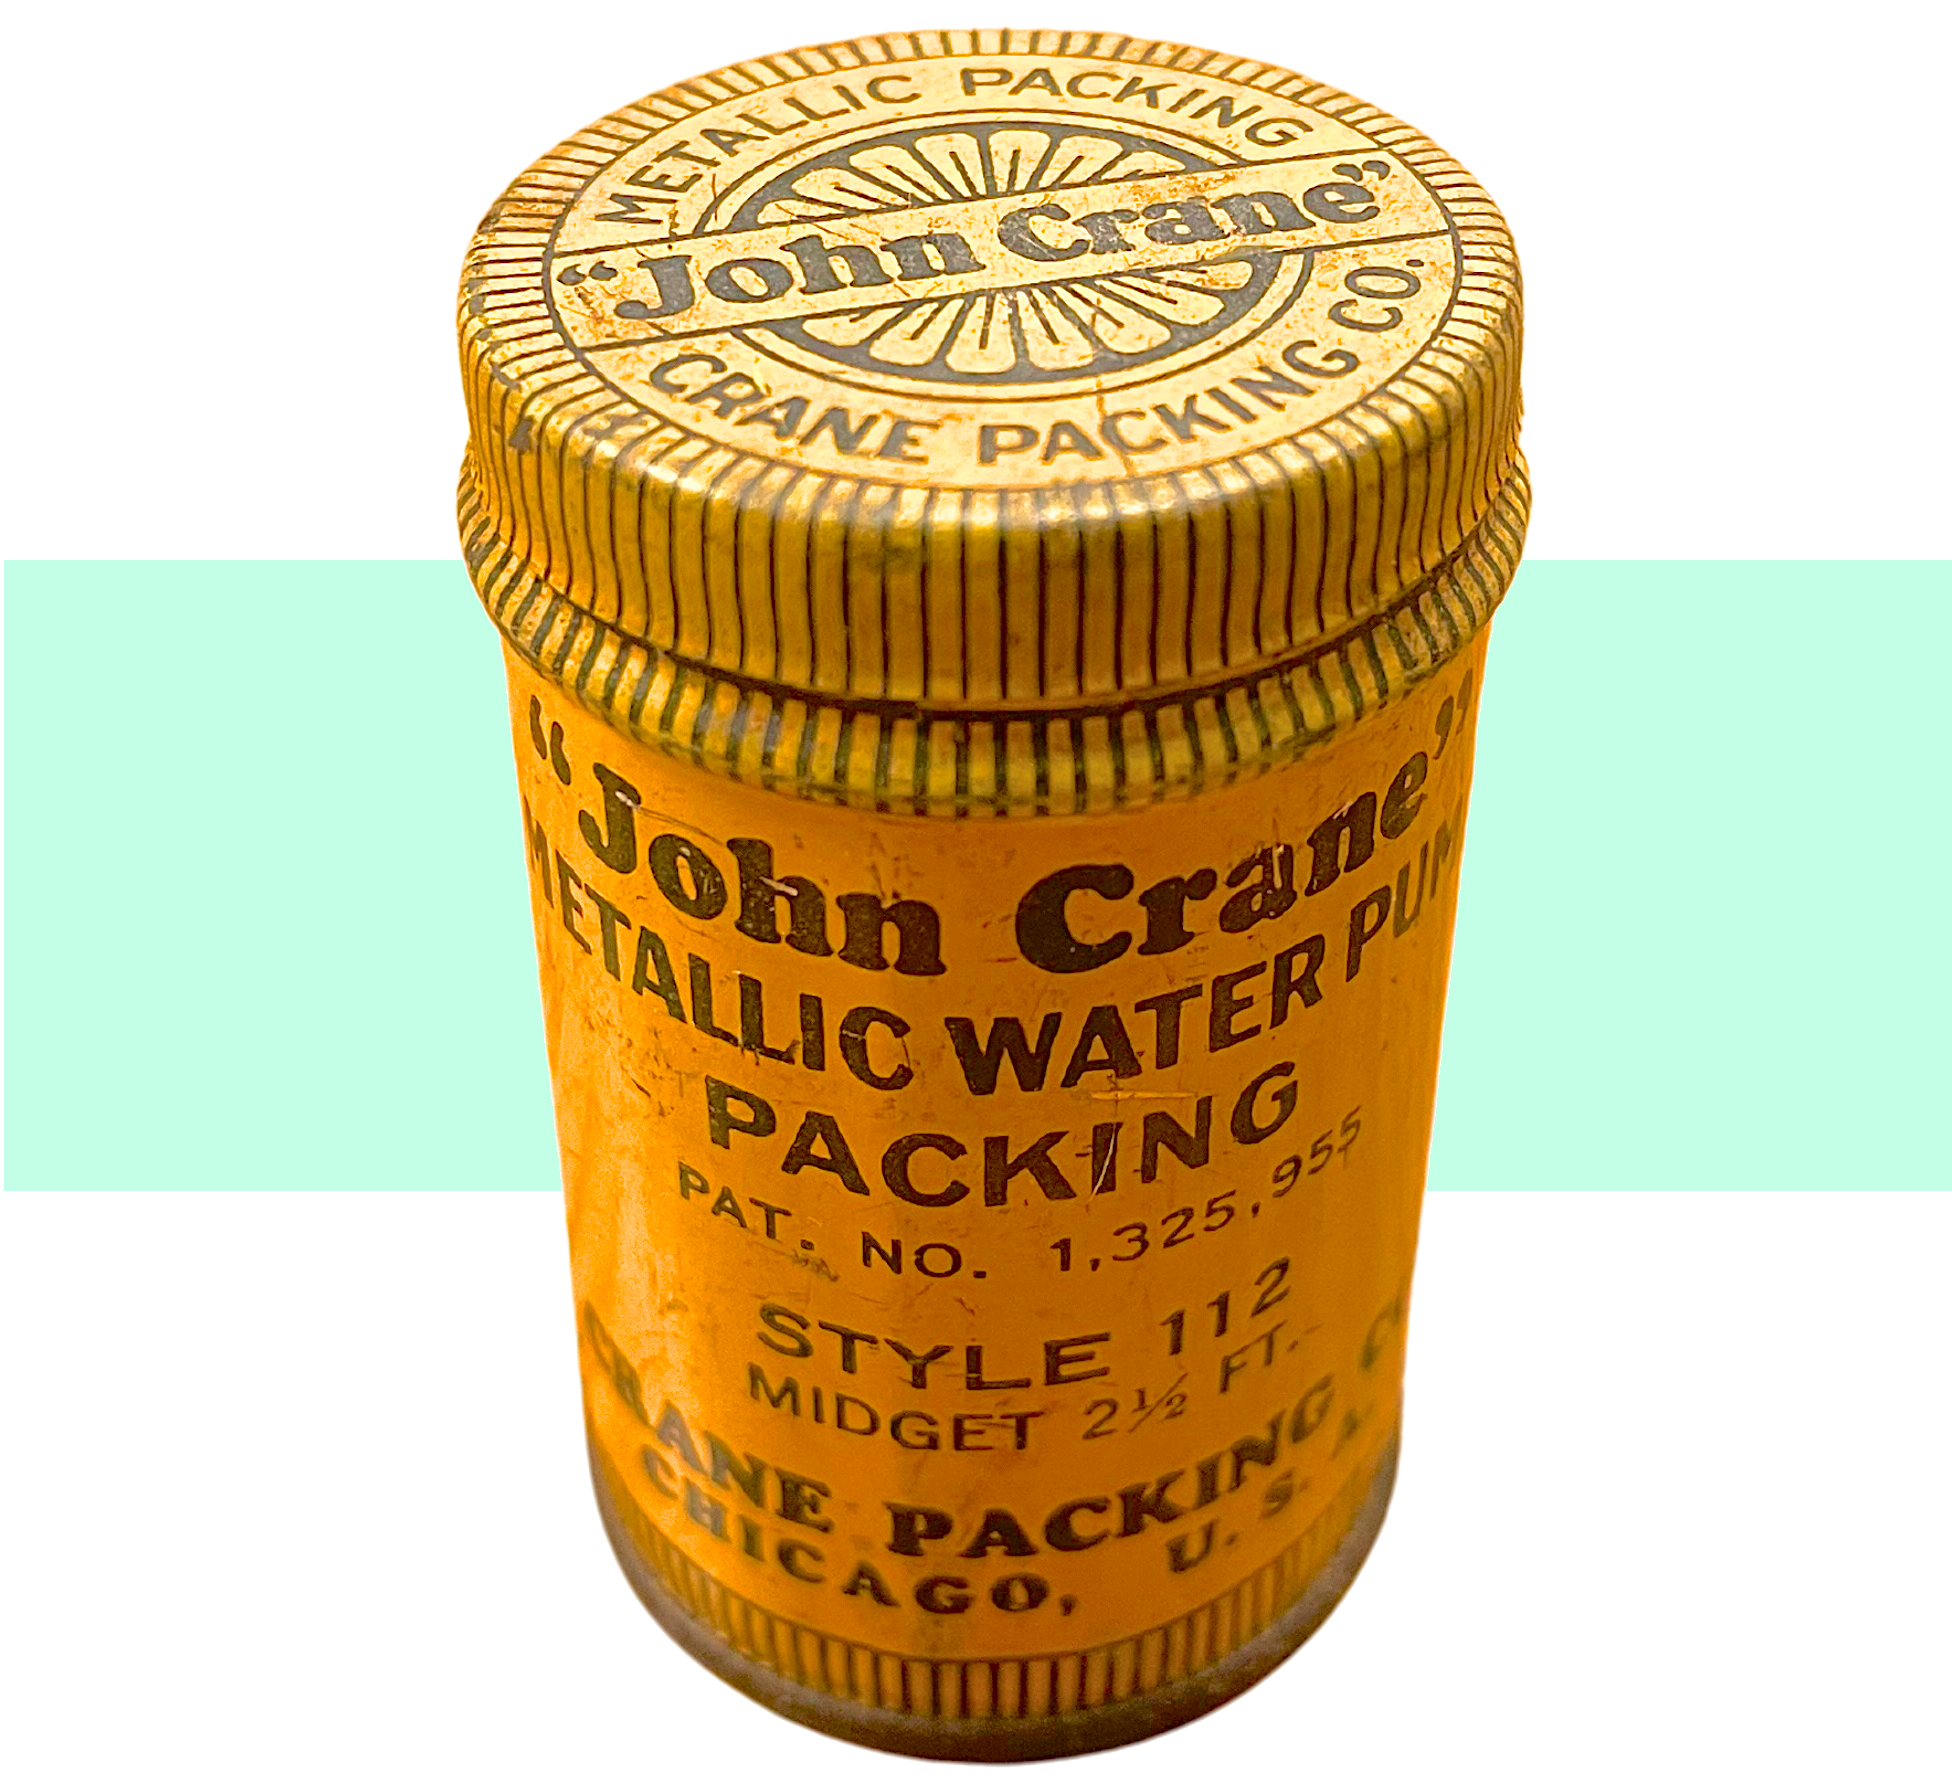 Crane Packing Co., est. 1917